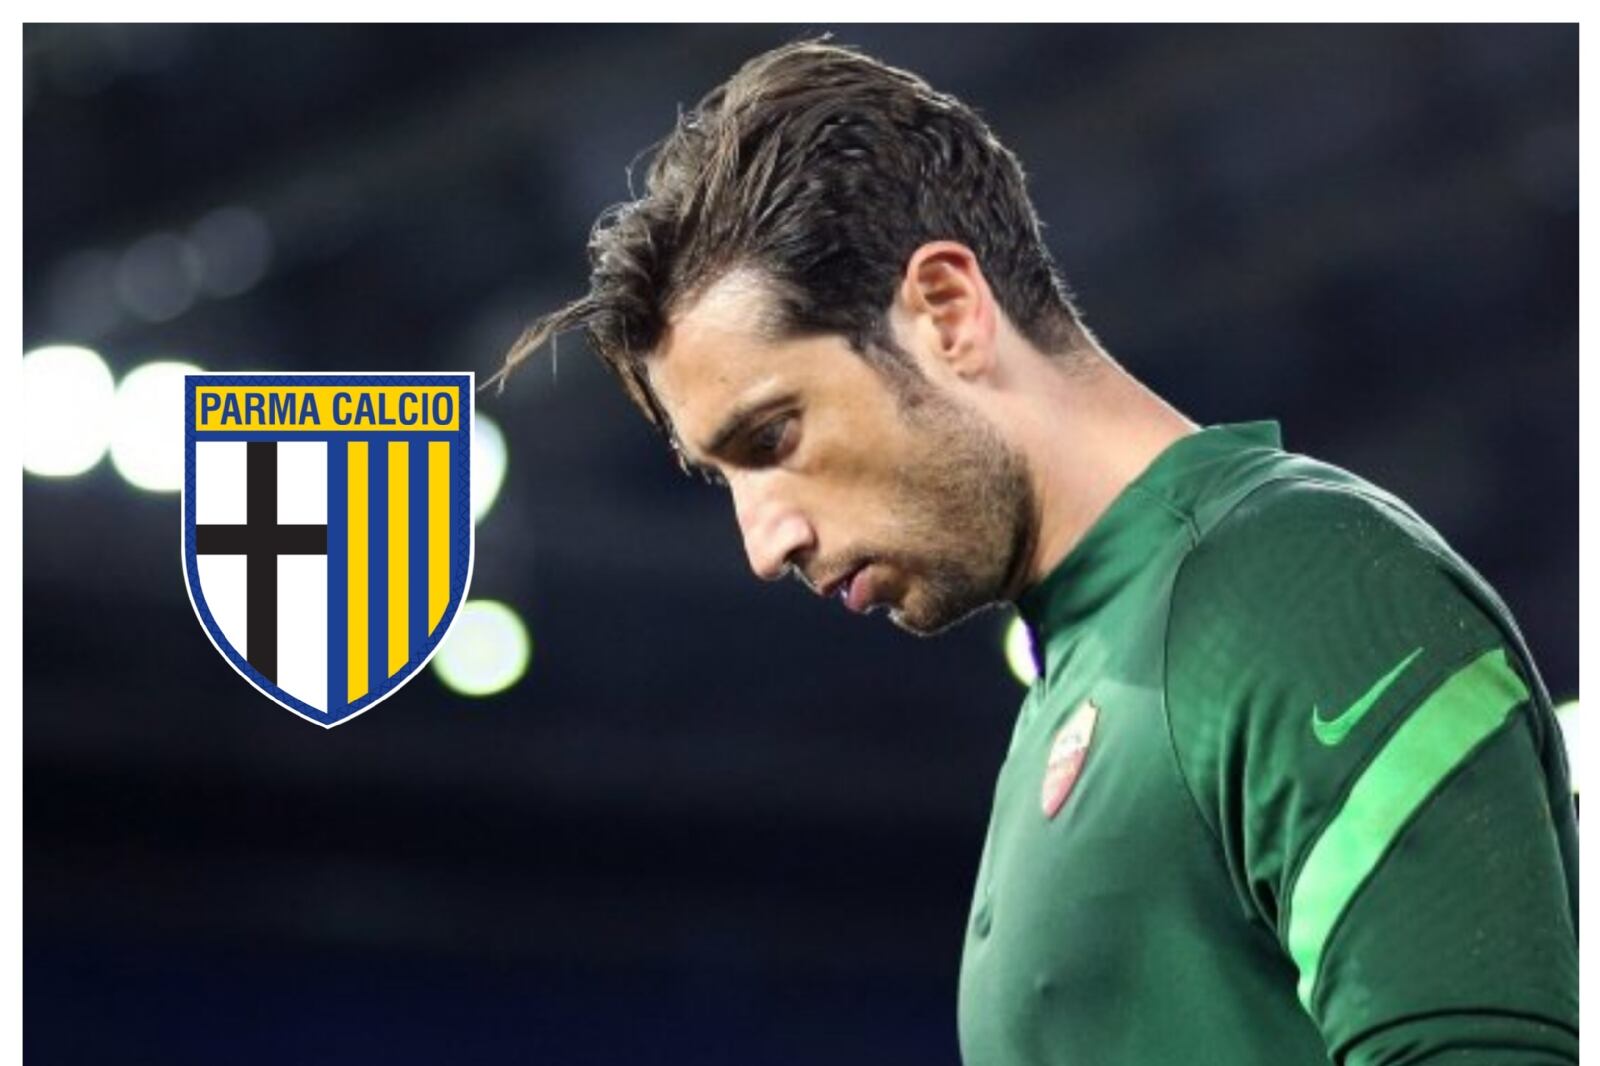 Agreden a Gianluigi Buffon y lo tachan como vendido tras su regreso al Parma